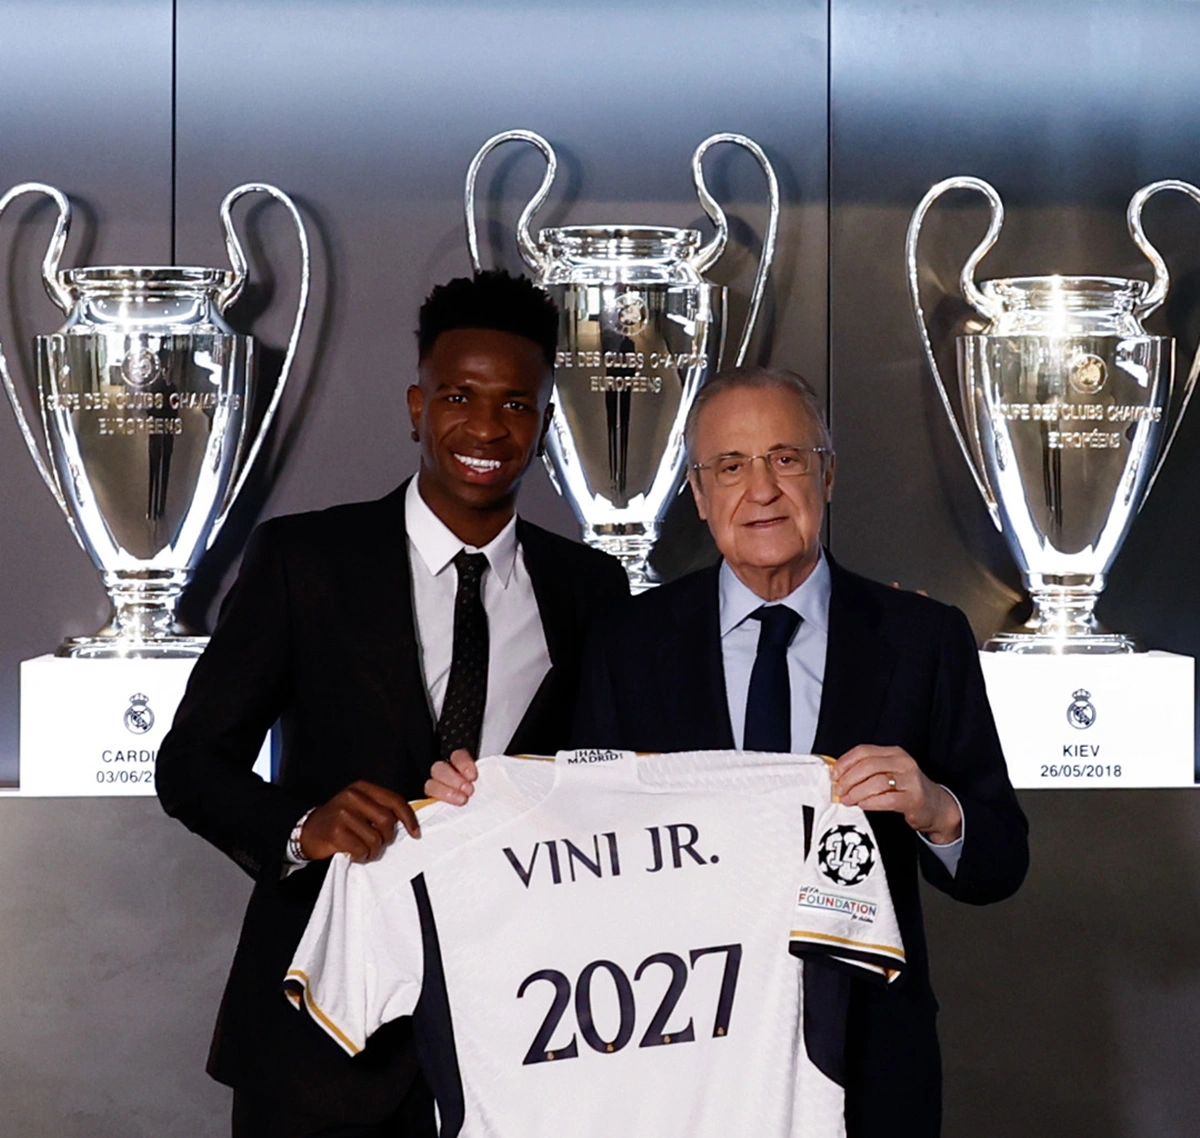 Vini jr assina renovação contratual com o Real Madrid